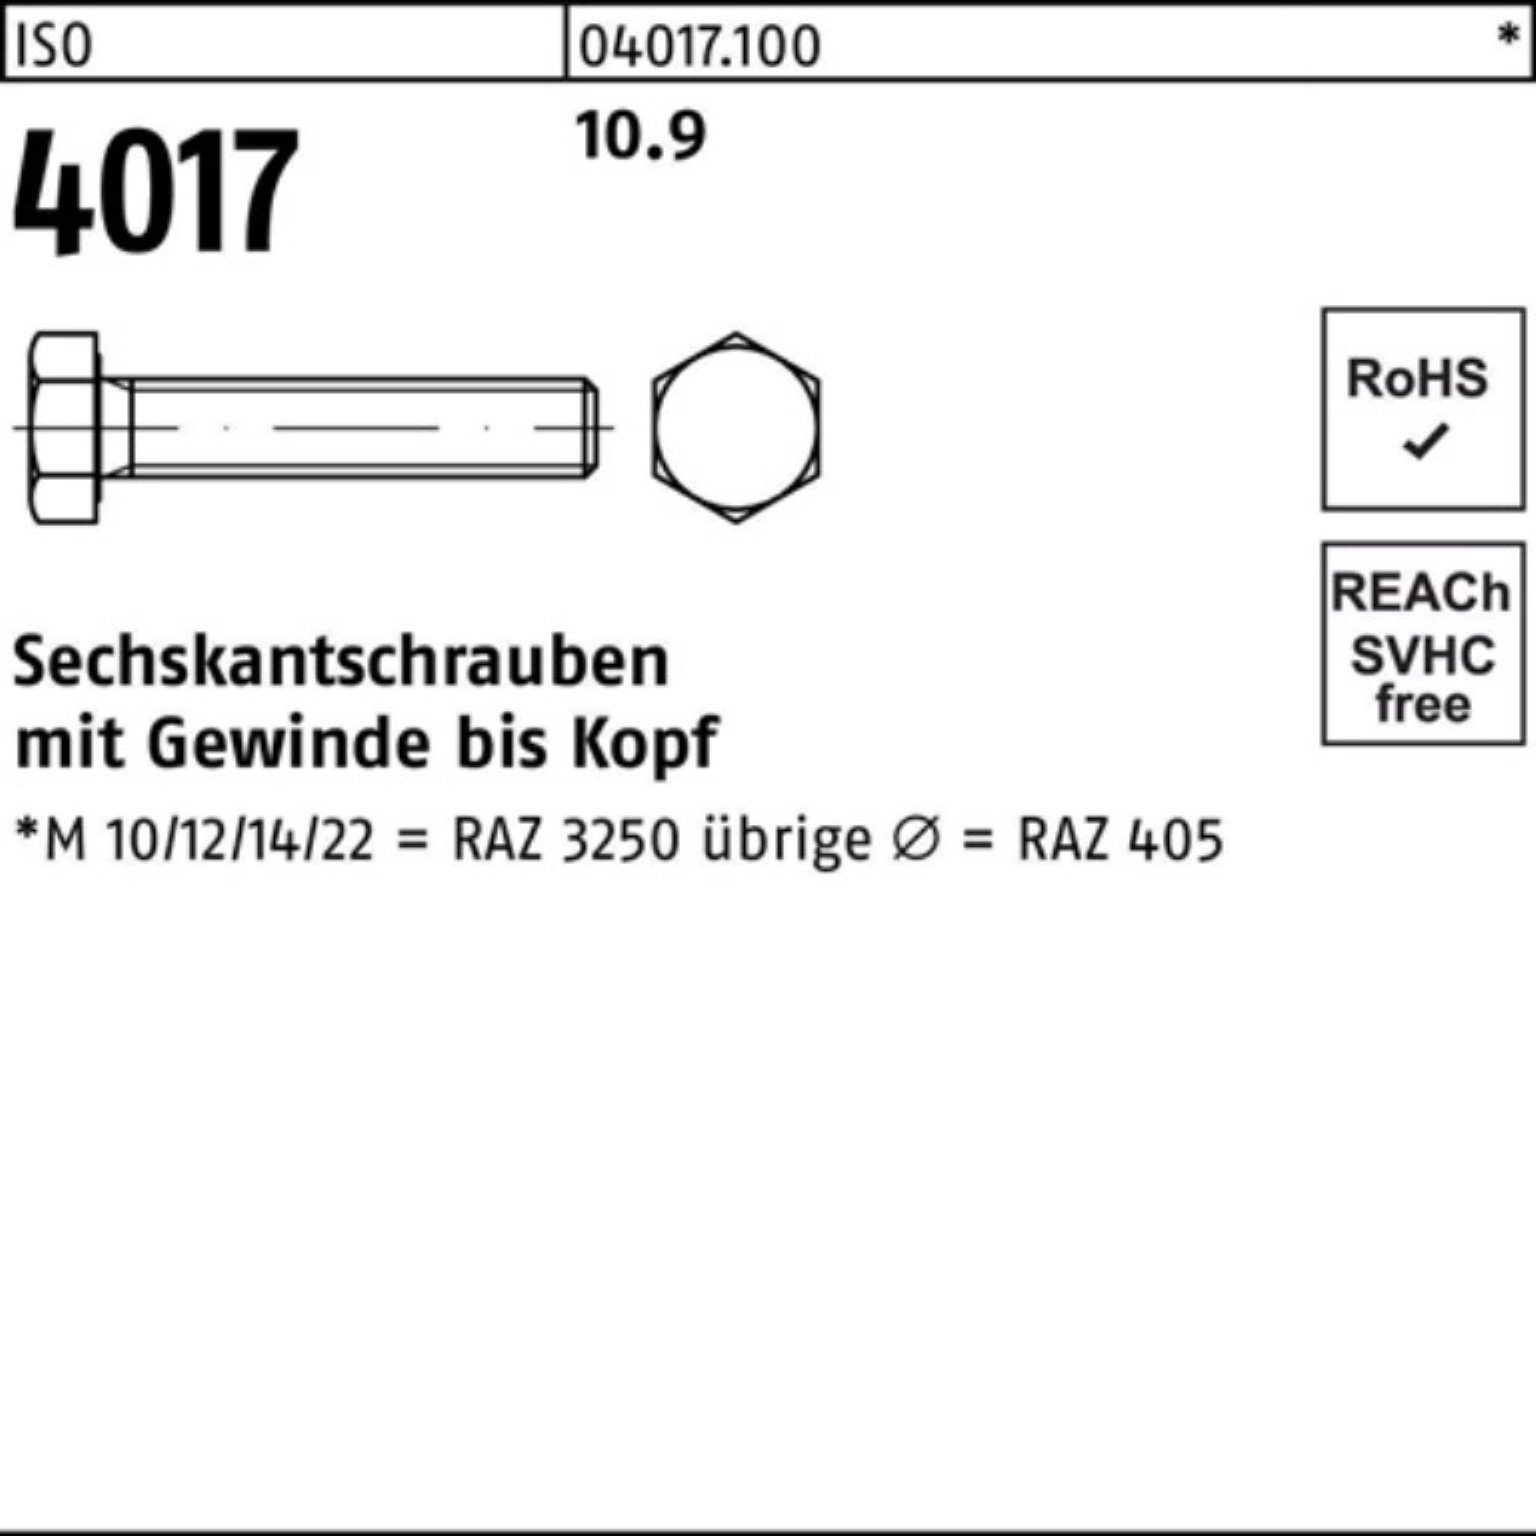 Bufab Sechskantschraube 100er Sechskantschraube M30x Pack 1 VG ISO 401 4017 75 Stück 10.9 ISO